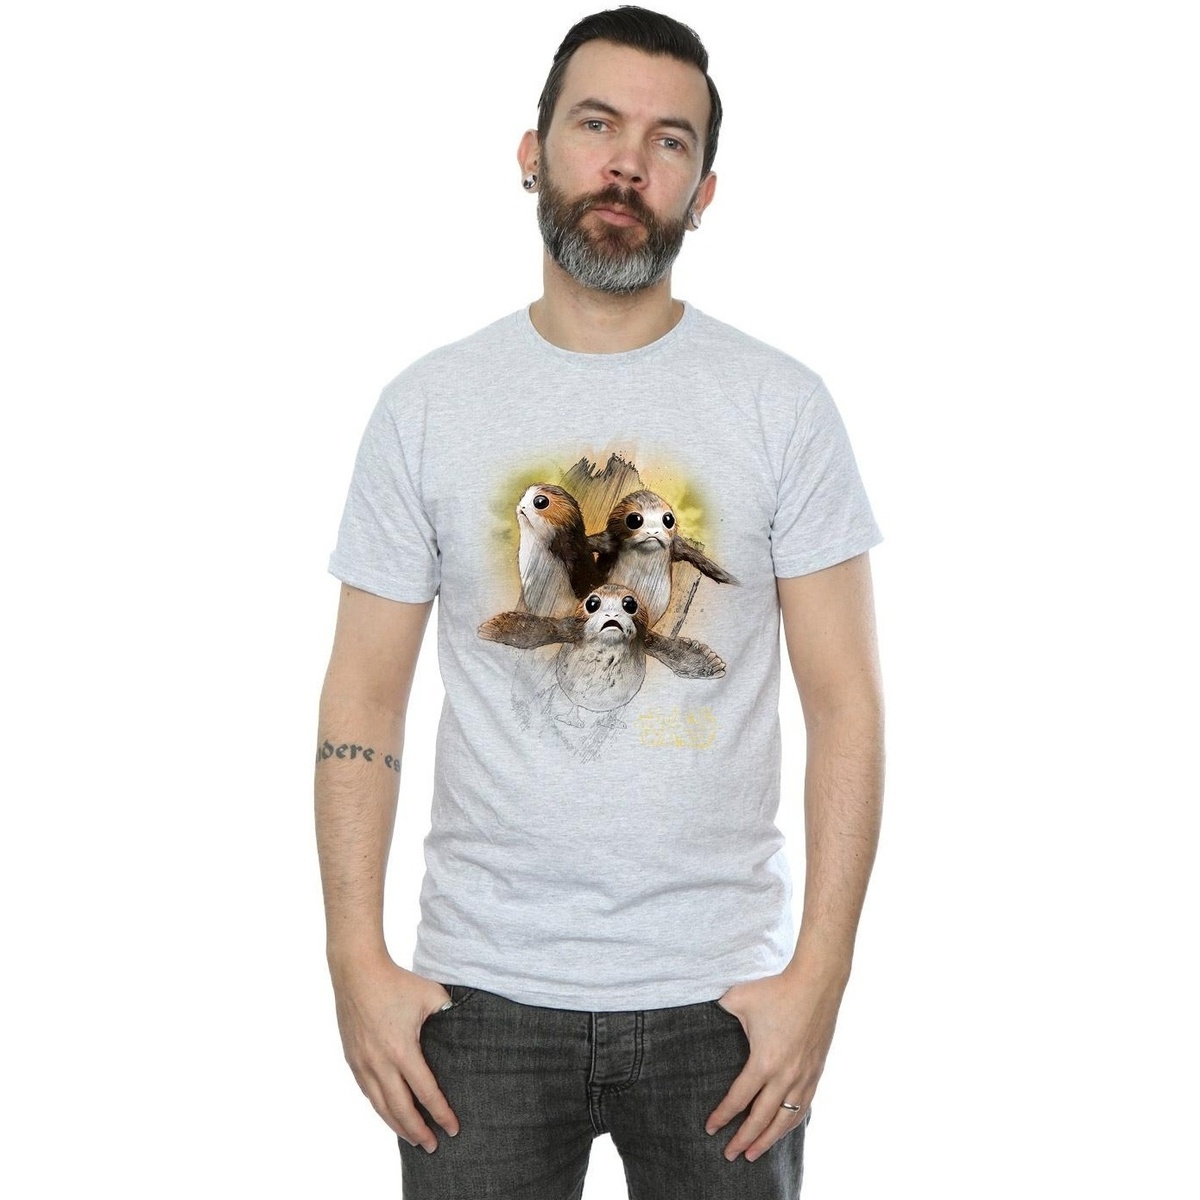 Vêtements Homme T-shirts manches longues Star Wars: The Last Jedi BI1181 Gris